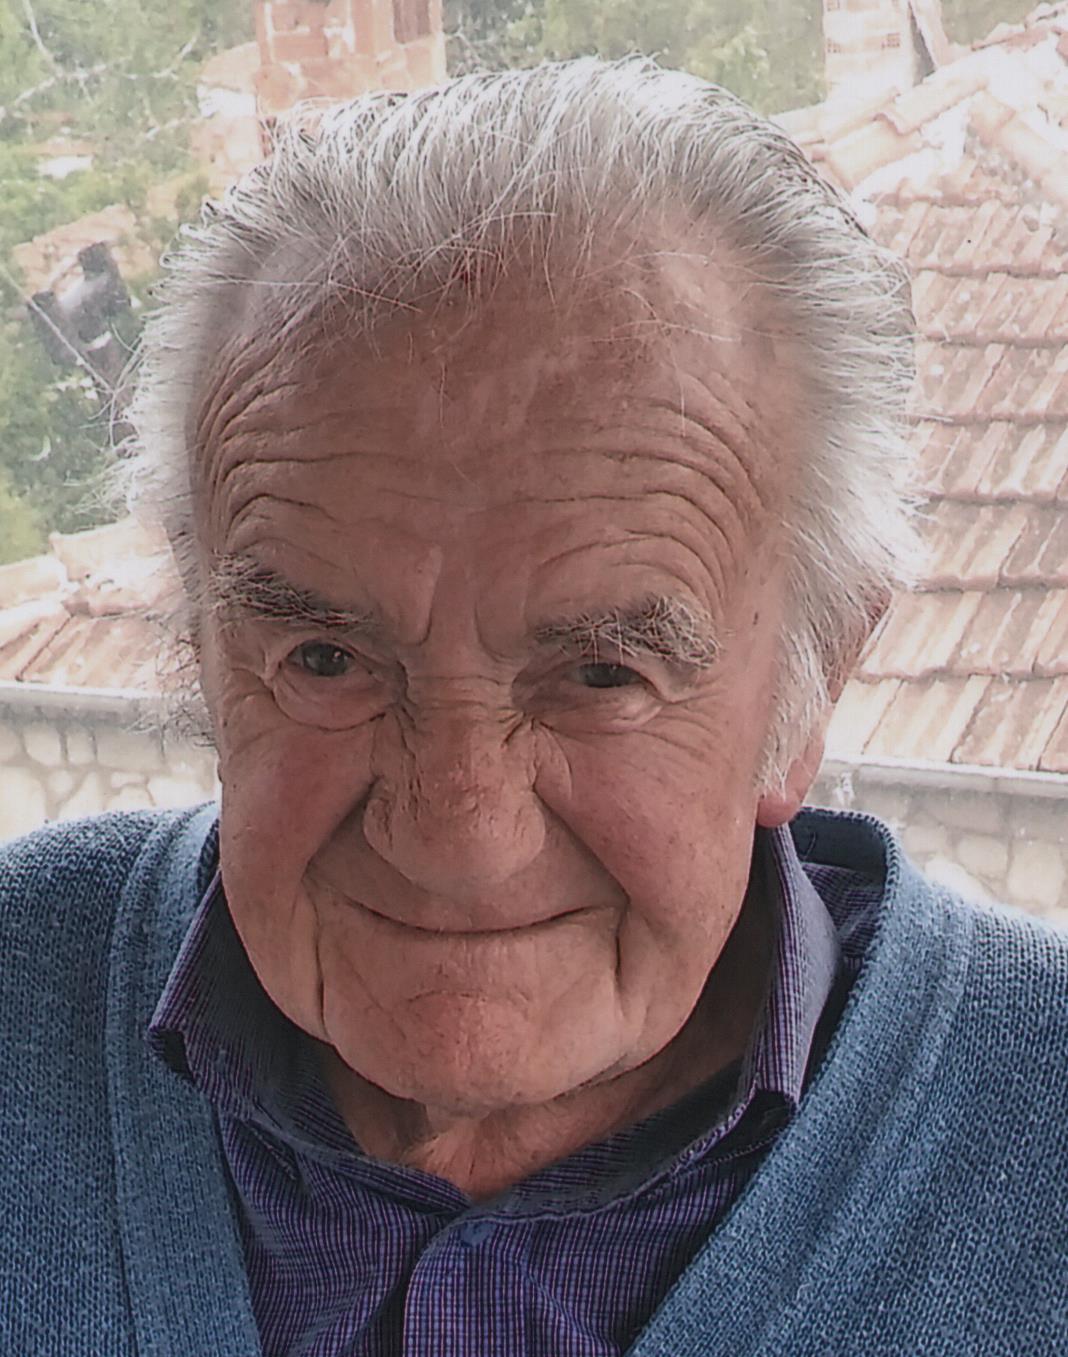 Έφυγε από την ζωή ο Nικόλαος Σβολιαντόπουλος σε ηλικία 86 ετών- Η κηδεία θα τελεστεί σήμερα Πέμπτη 25 Αυγούστου